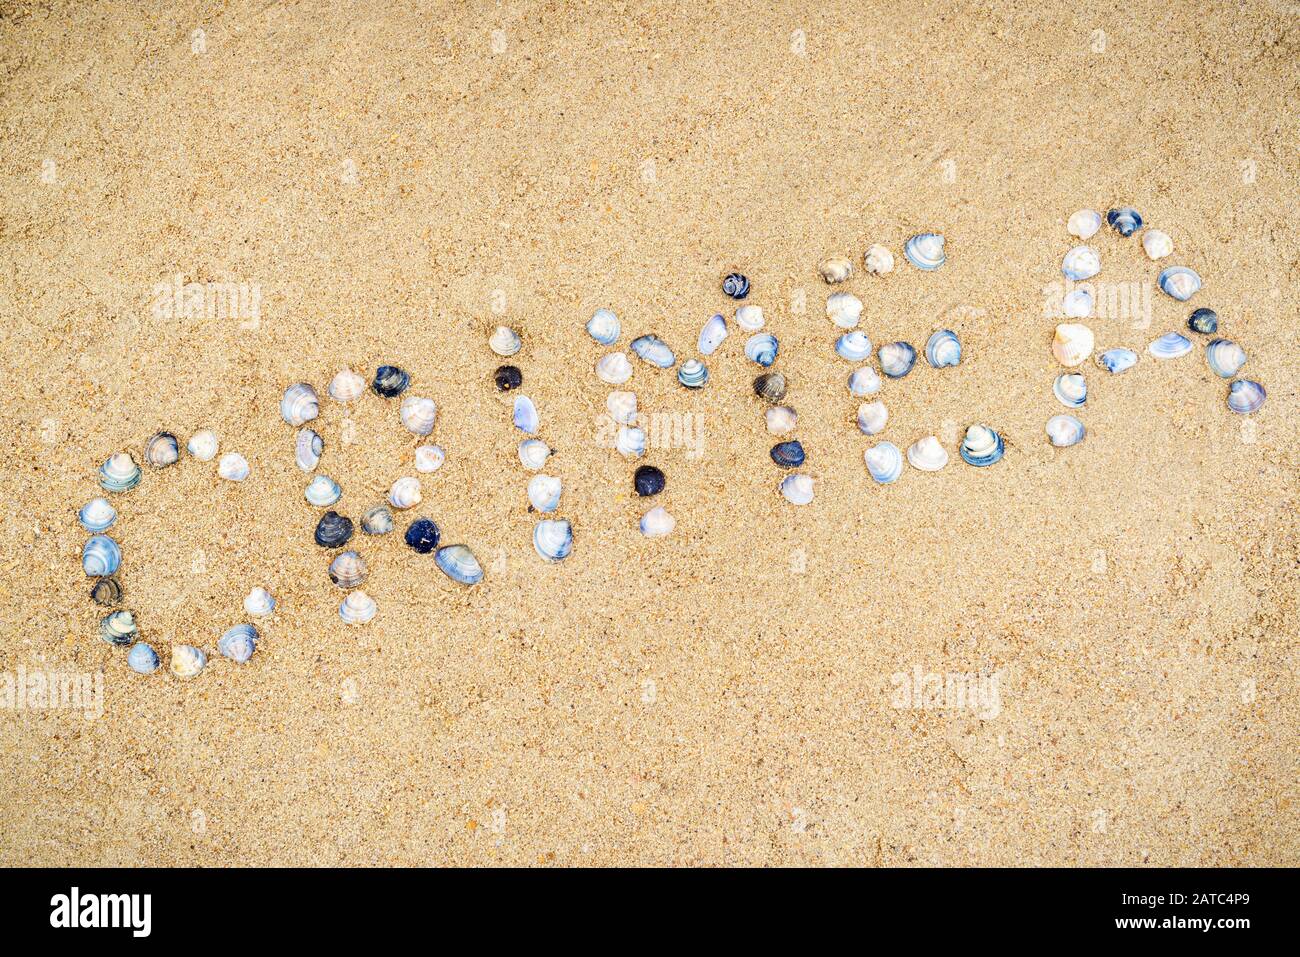 'Crimée' construit de coquillages sur le sable de la côte de Crimée, en Russie. Inscription avec des coquillages sur la plage dans le sud de la Crimée. Concept de vacances d'été Banque D'Images